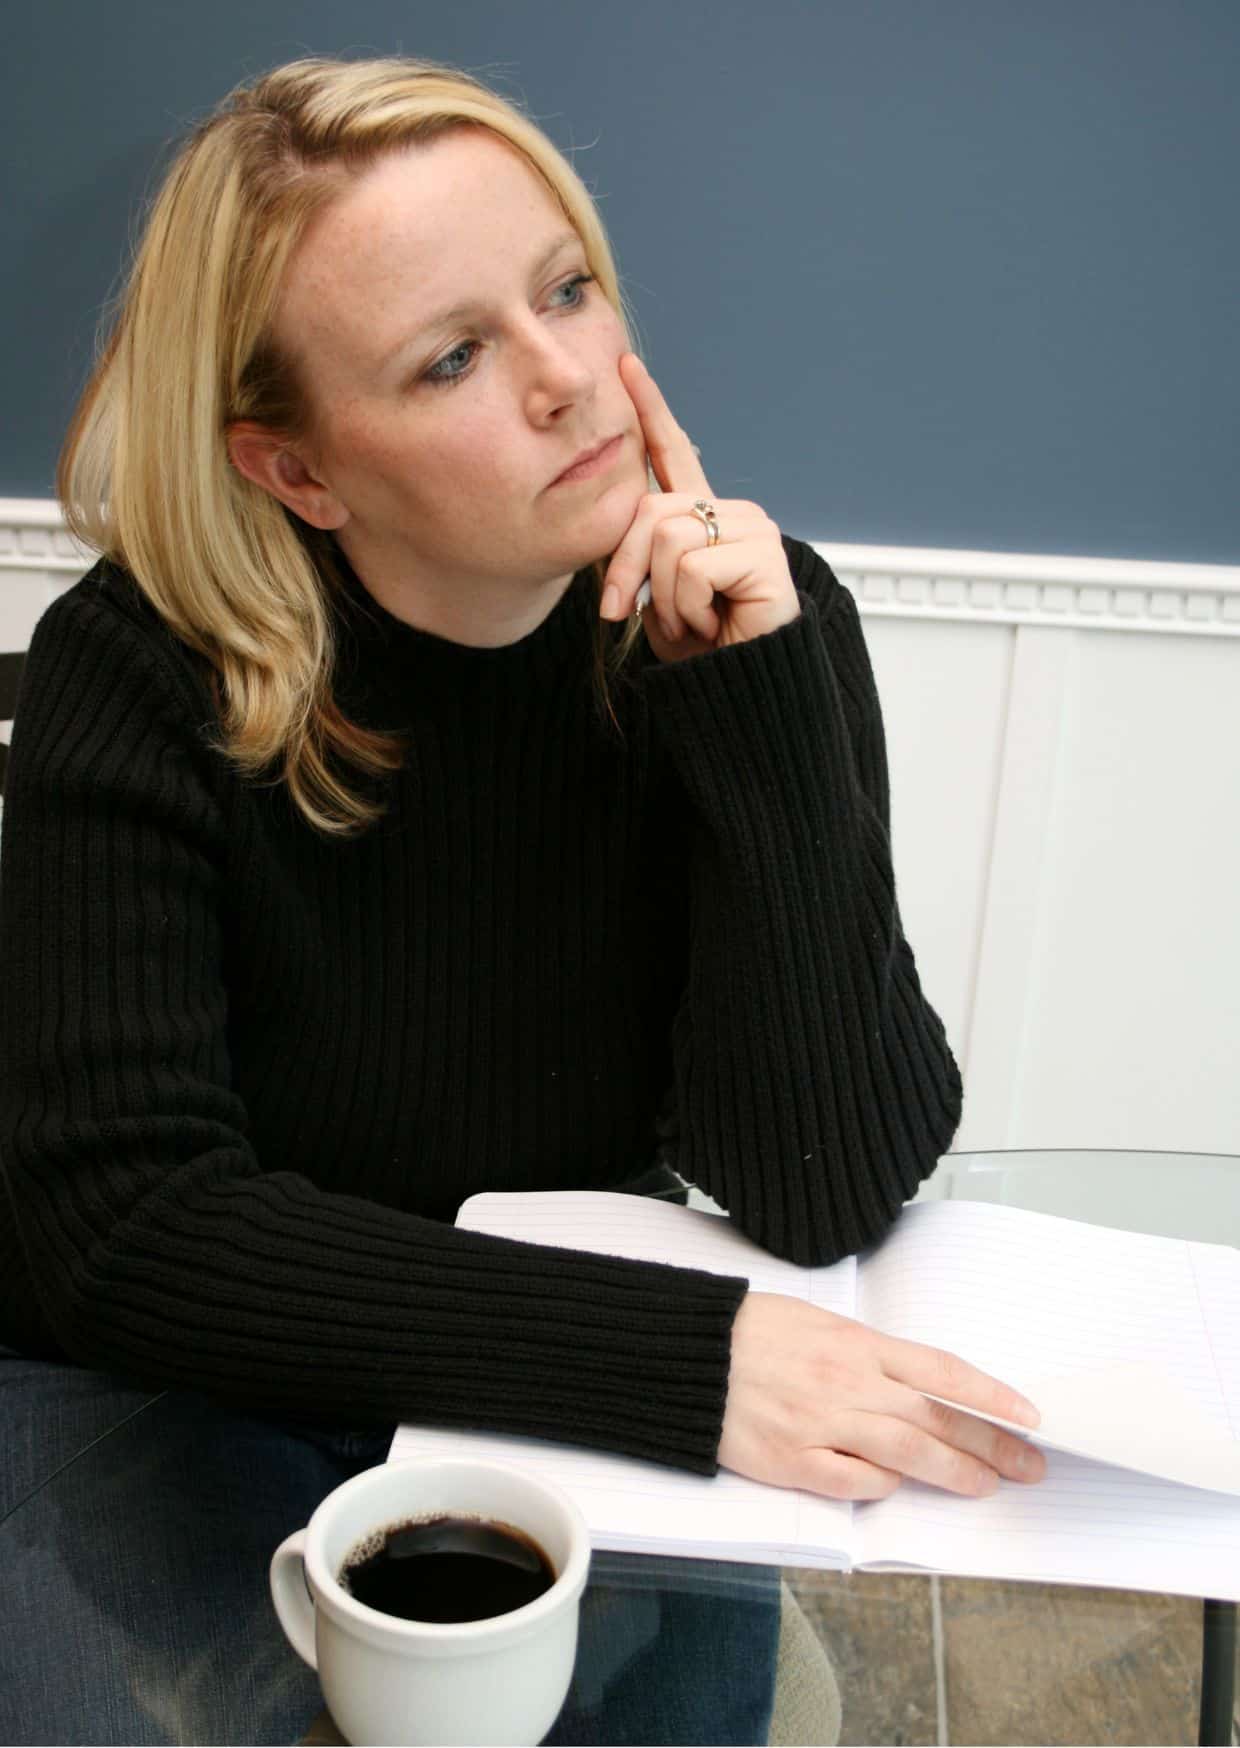 Eine Frau in schwarzer Kleidung ist dabei, einen Brief zu schreiben.